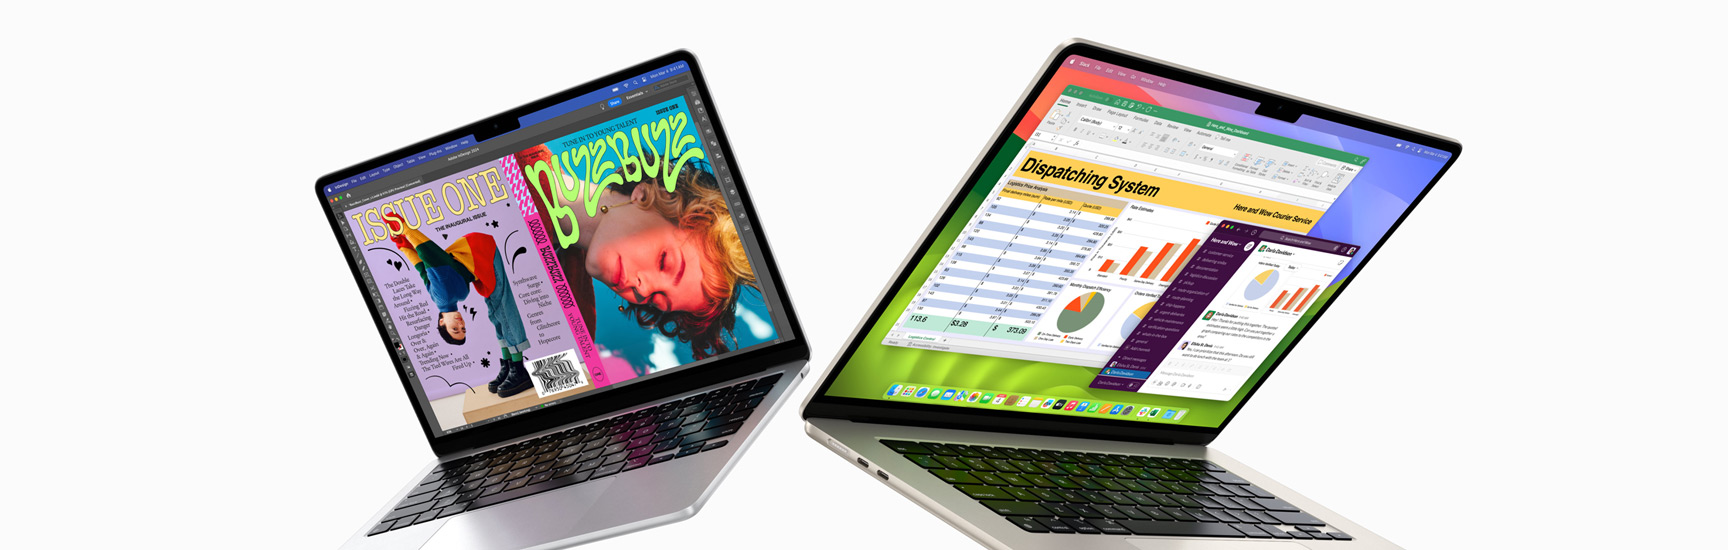 MacBook Air de 13 polegadas à esquerda e MacBook Air de 15 polegadas à direita parcialmente abertos. Ecrã de 13 polegadas a mostrar a capa colorida de uma revista criada no In Design. Ecrã de 15 polegadas a mostrar o Microsoft Excel e o Slack.